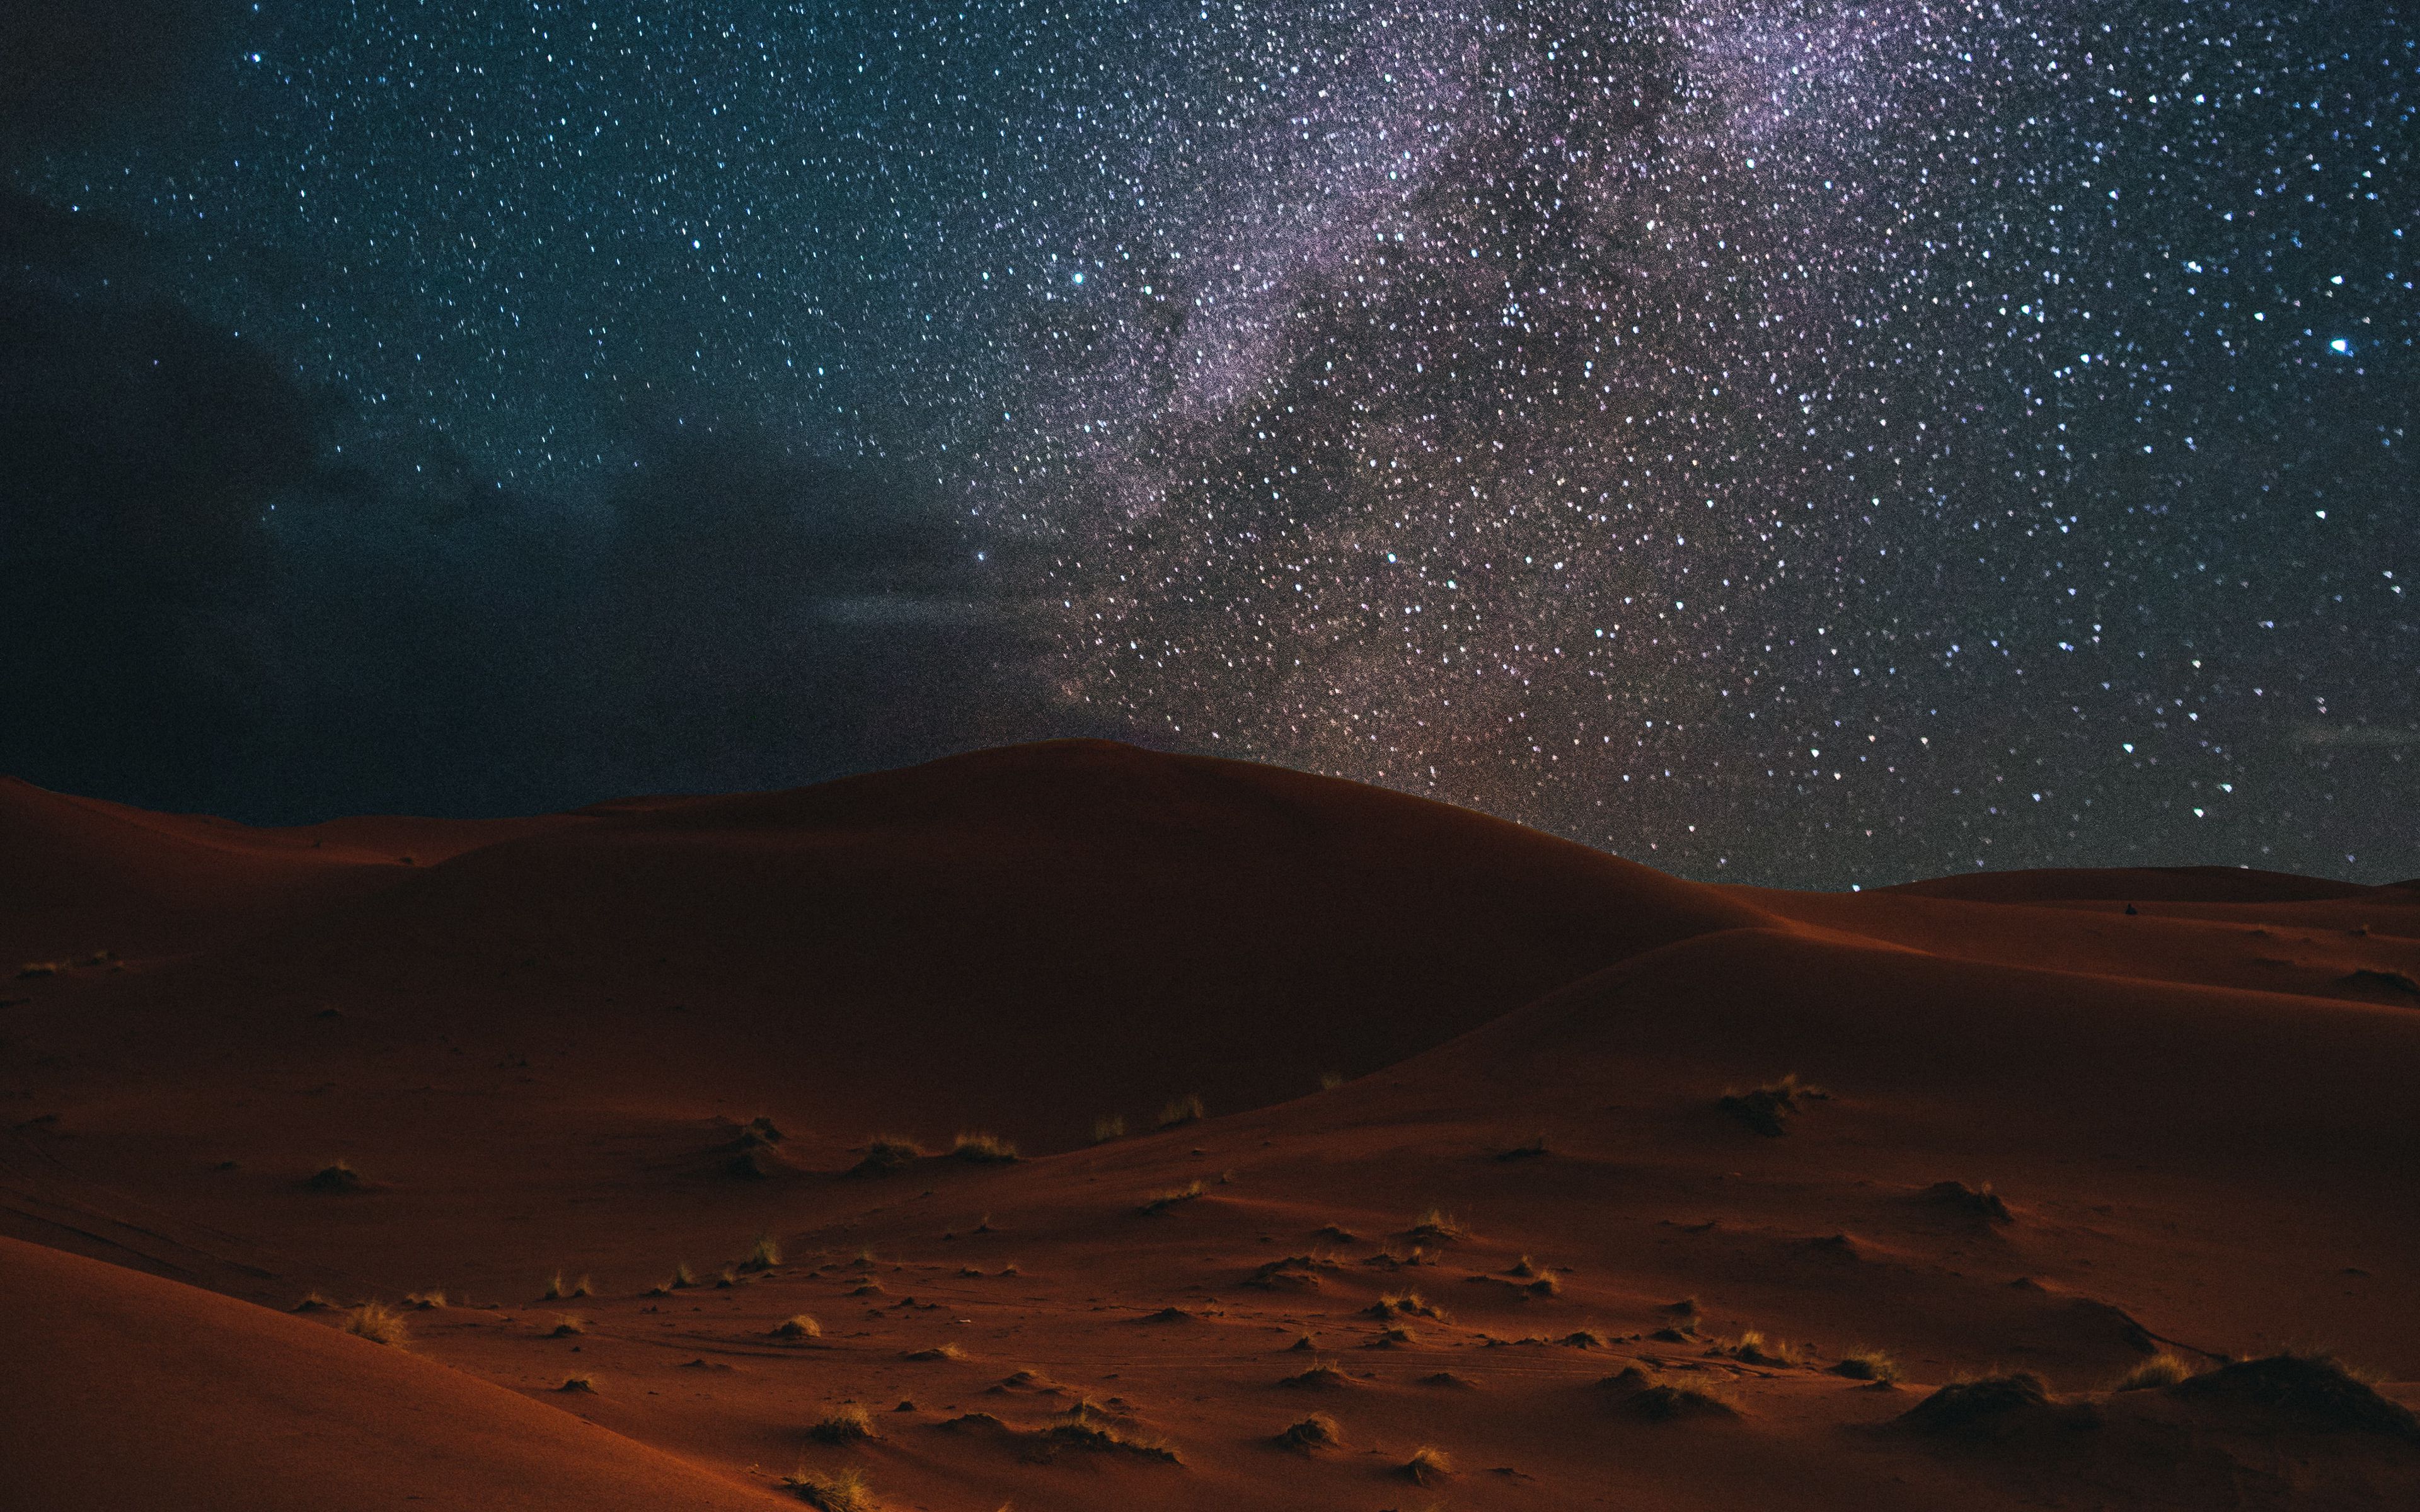 Desert Night Wallpapers  Top Free Desert Night Backgrounds   WallpaperAccess